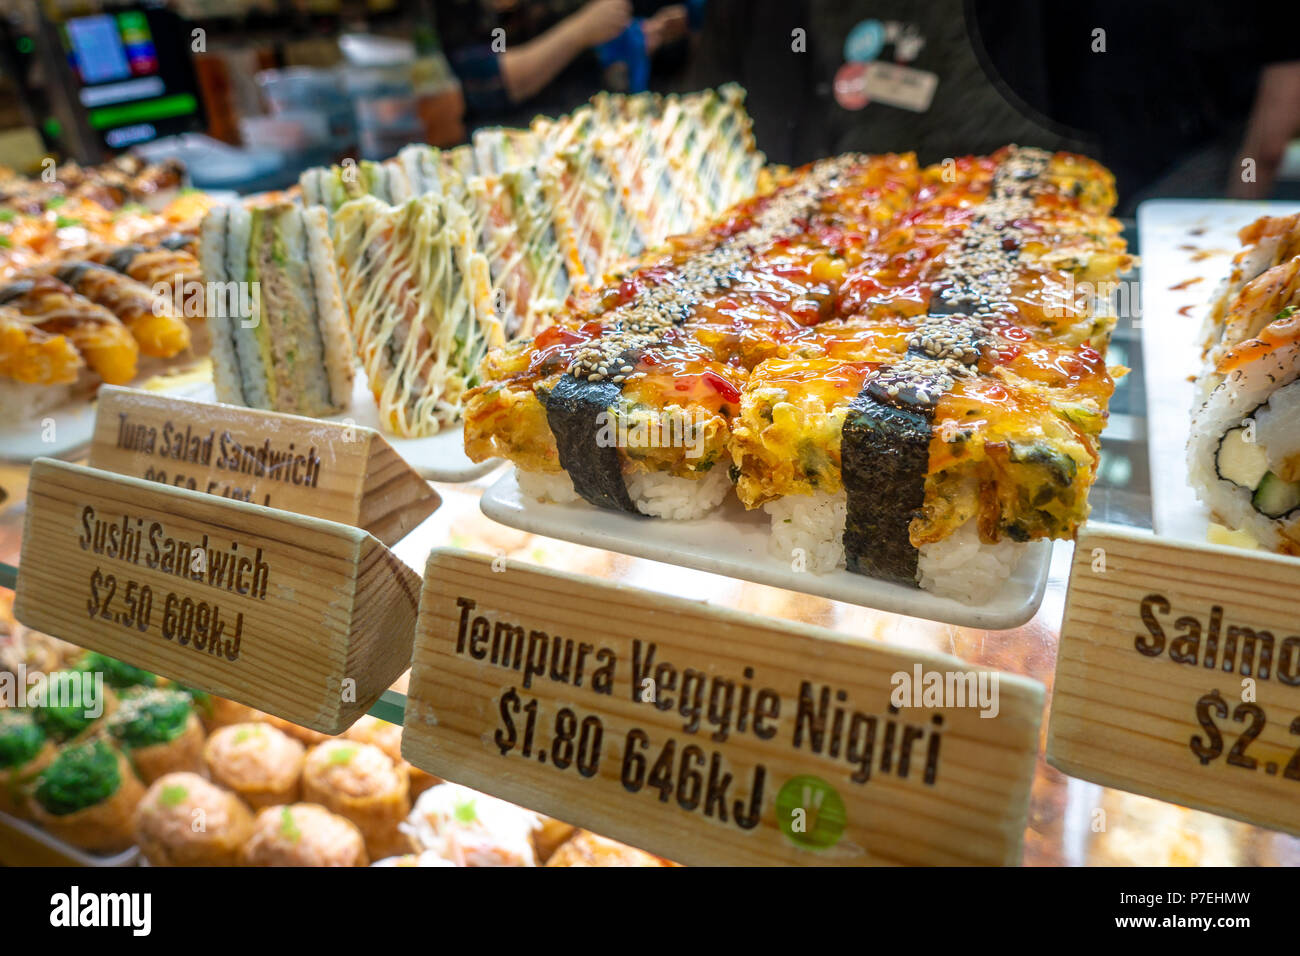 Verschiedene Arten von Sushi in Zähler mit englischen Namen, Kalorien und Preis auf jede Variable angezeigt. Melbourne, VIC, Australien. Stockfoto